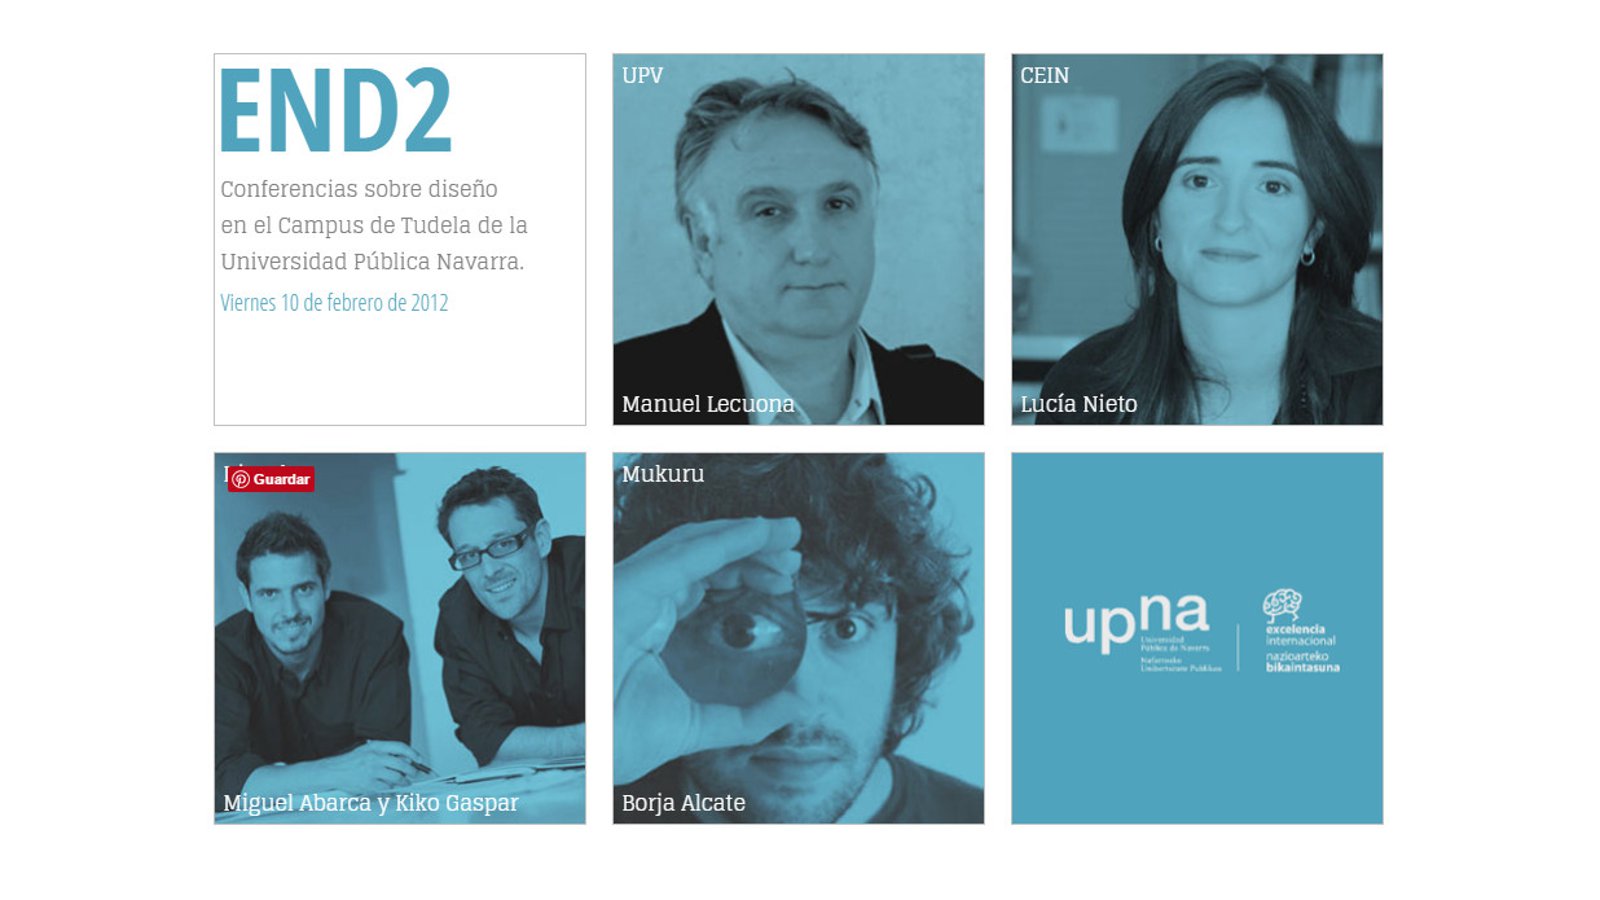 Flyer promoción Conferencias sobre diseño en el campus de Tudela Universidad publica de Navarra END2